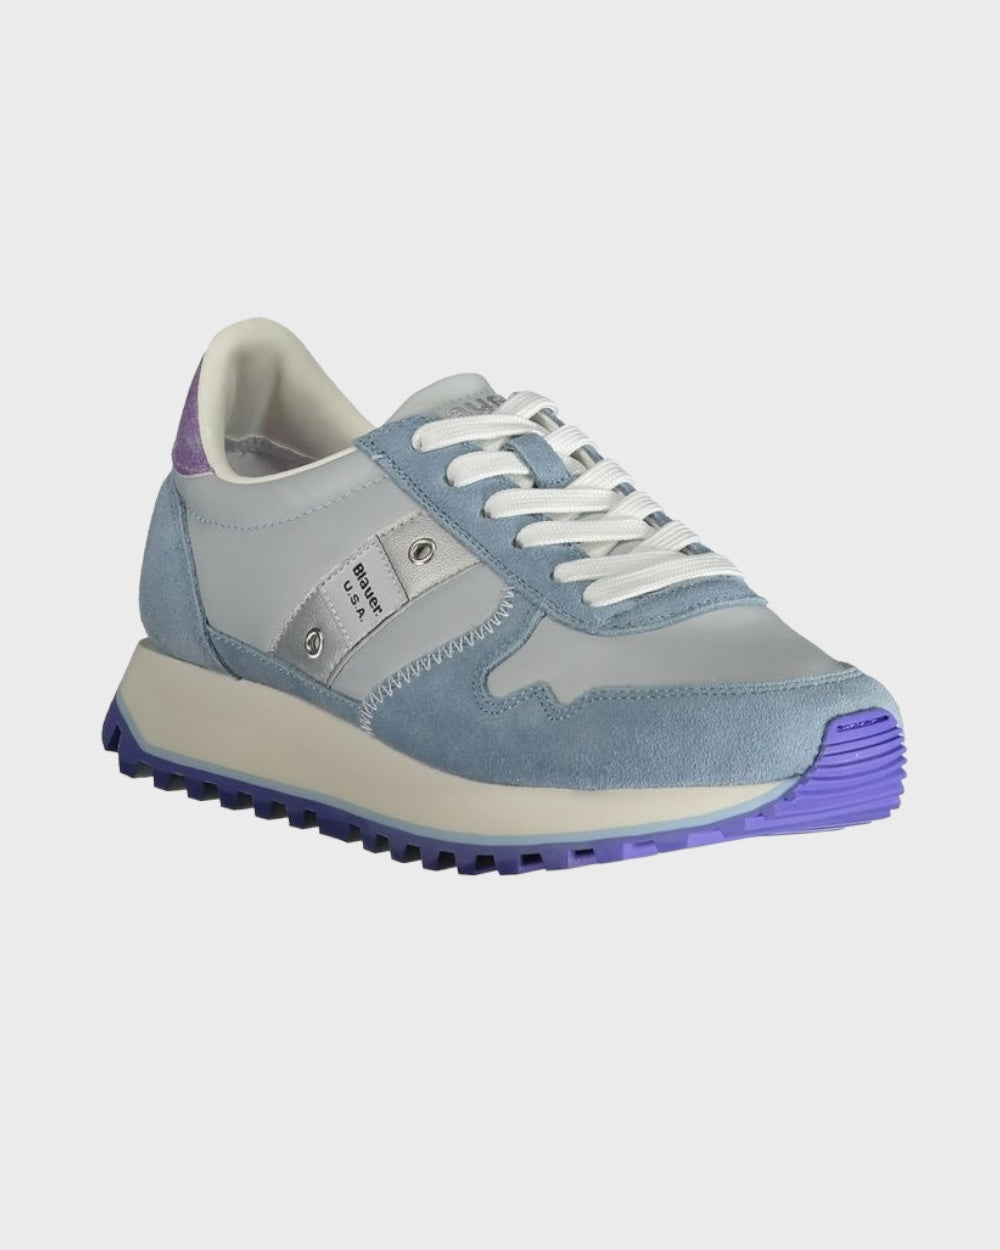 Blauer | Blauw Heren Sneakers